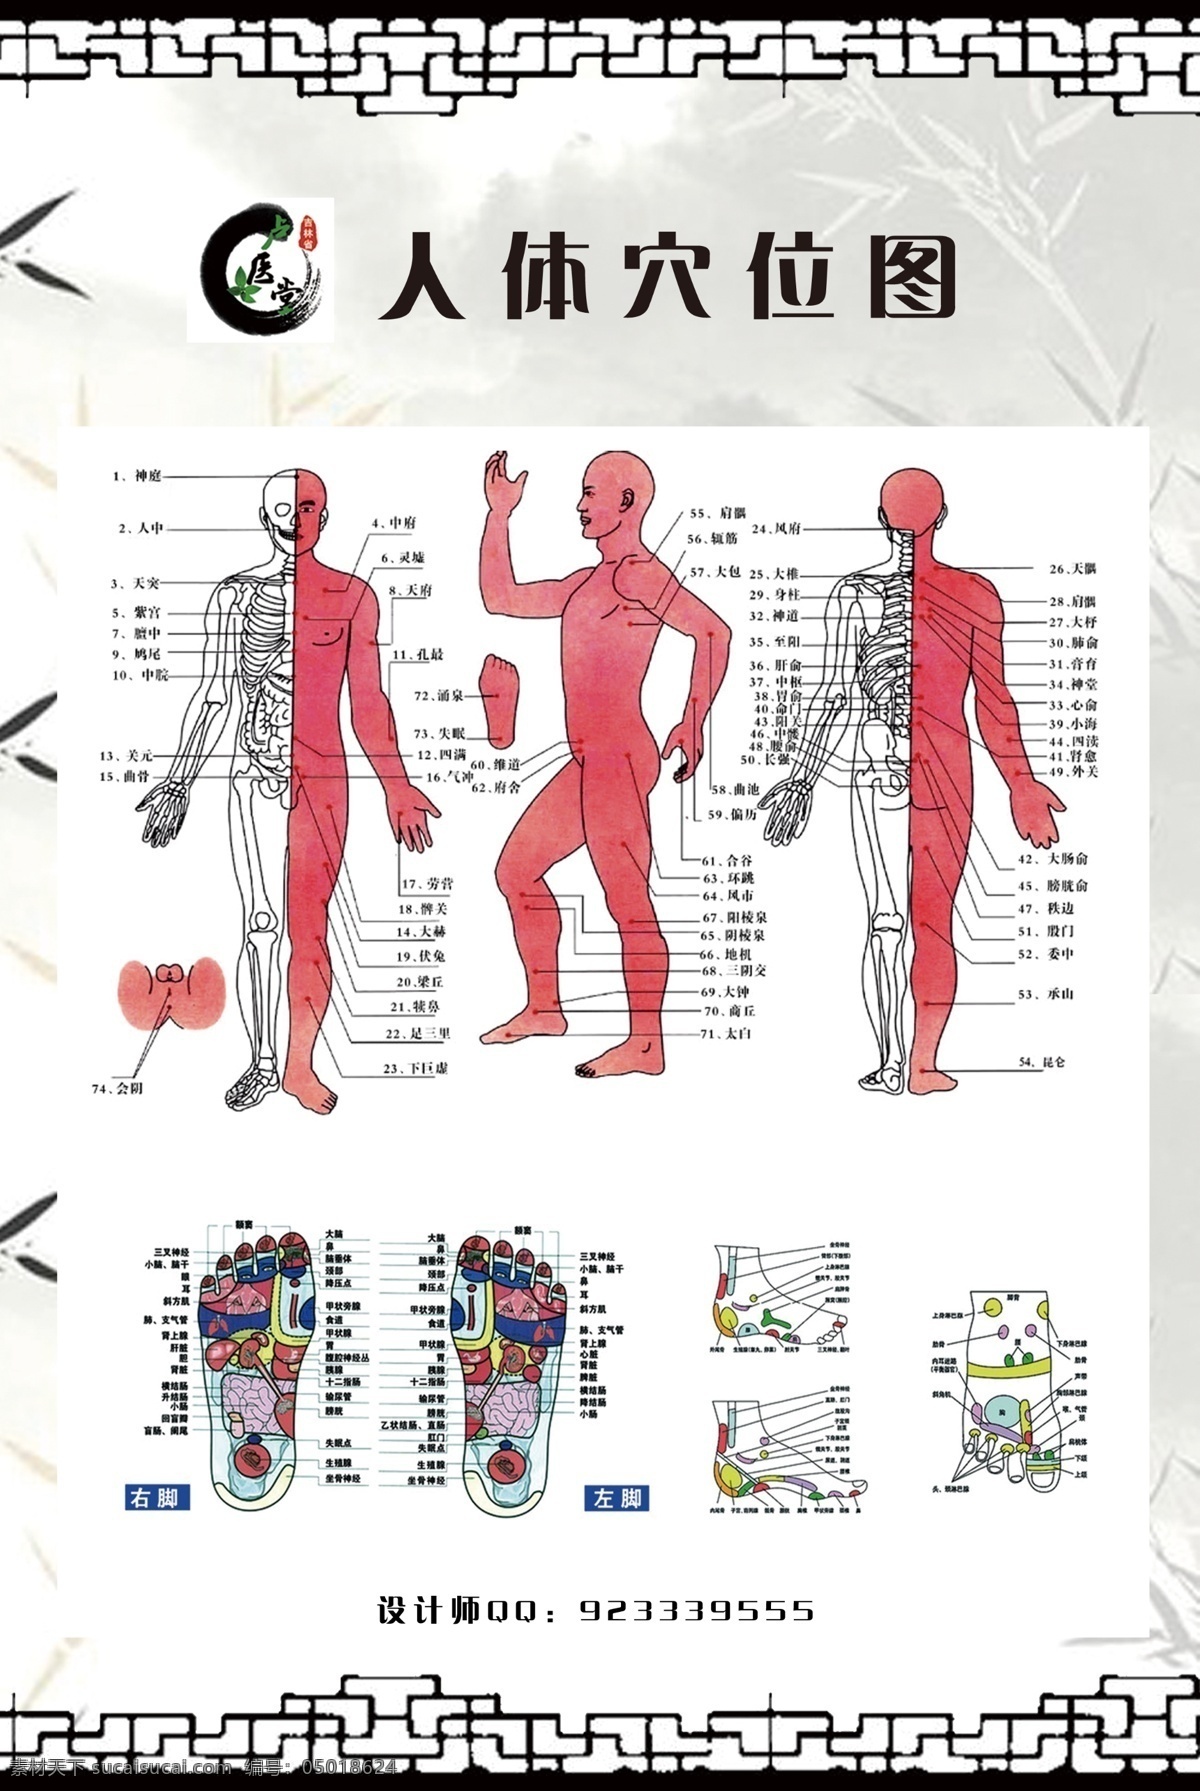 西医 理疗 构造 人体 图 人体穴位图 人体器官图 水墨画 边框 穴位 西医彩页 中医宣传单